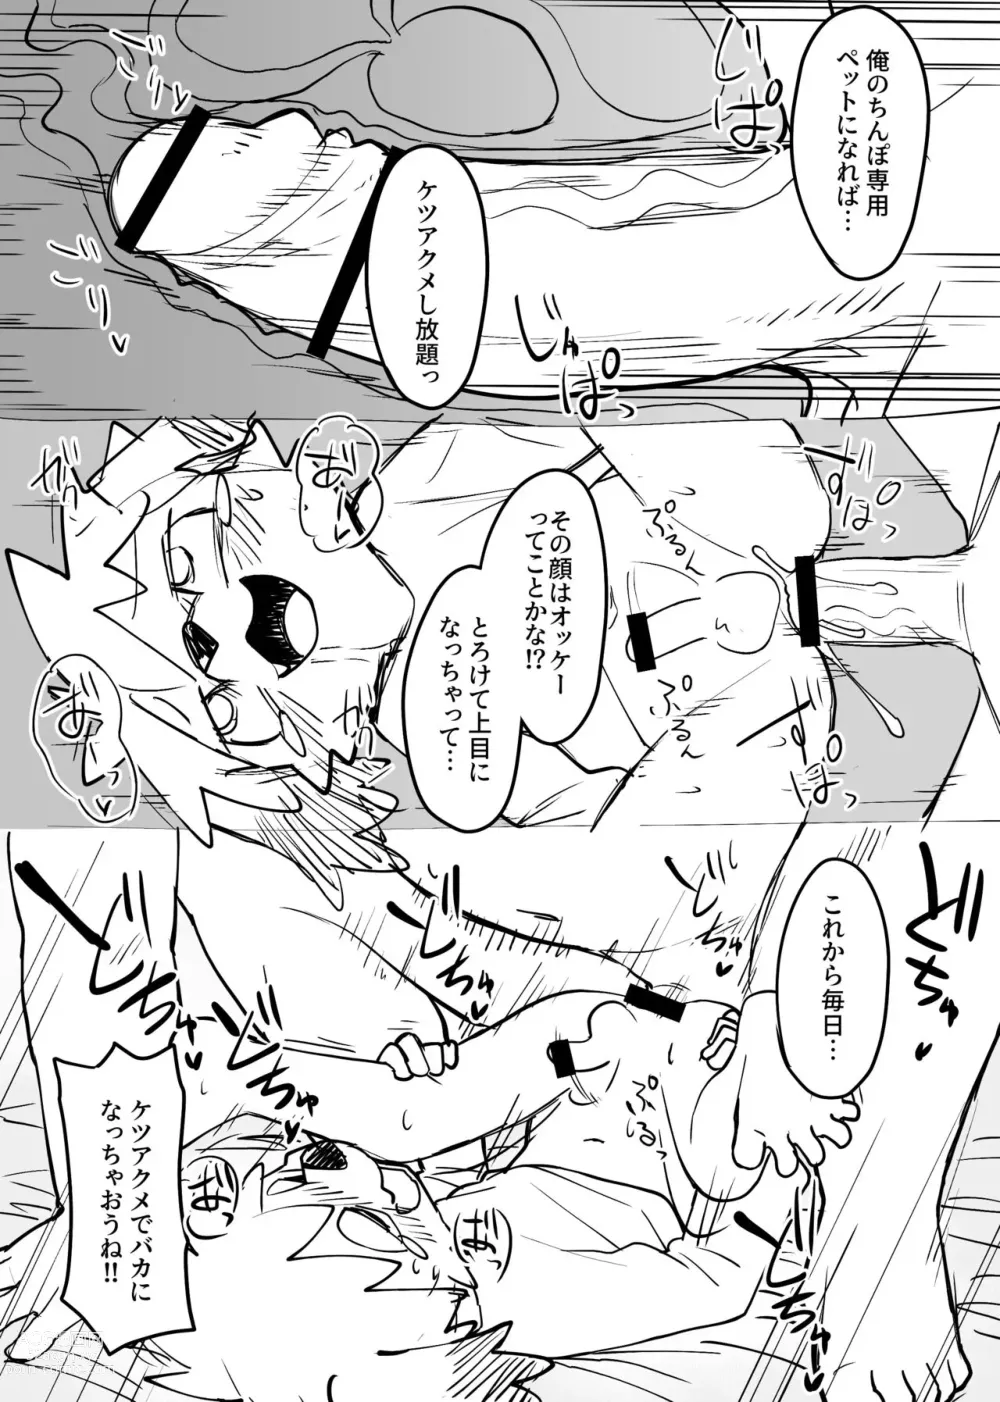 Page 10 of doujinshi Manmosu Marimo - Mamoru-kun Doujin #2